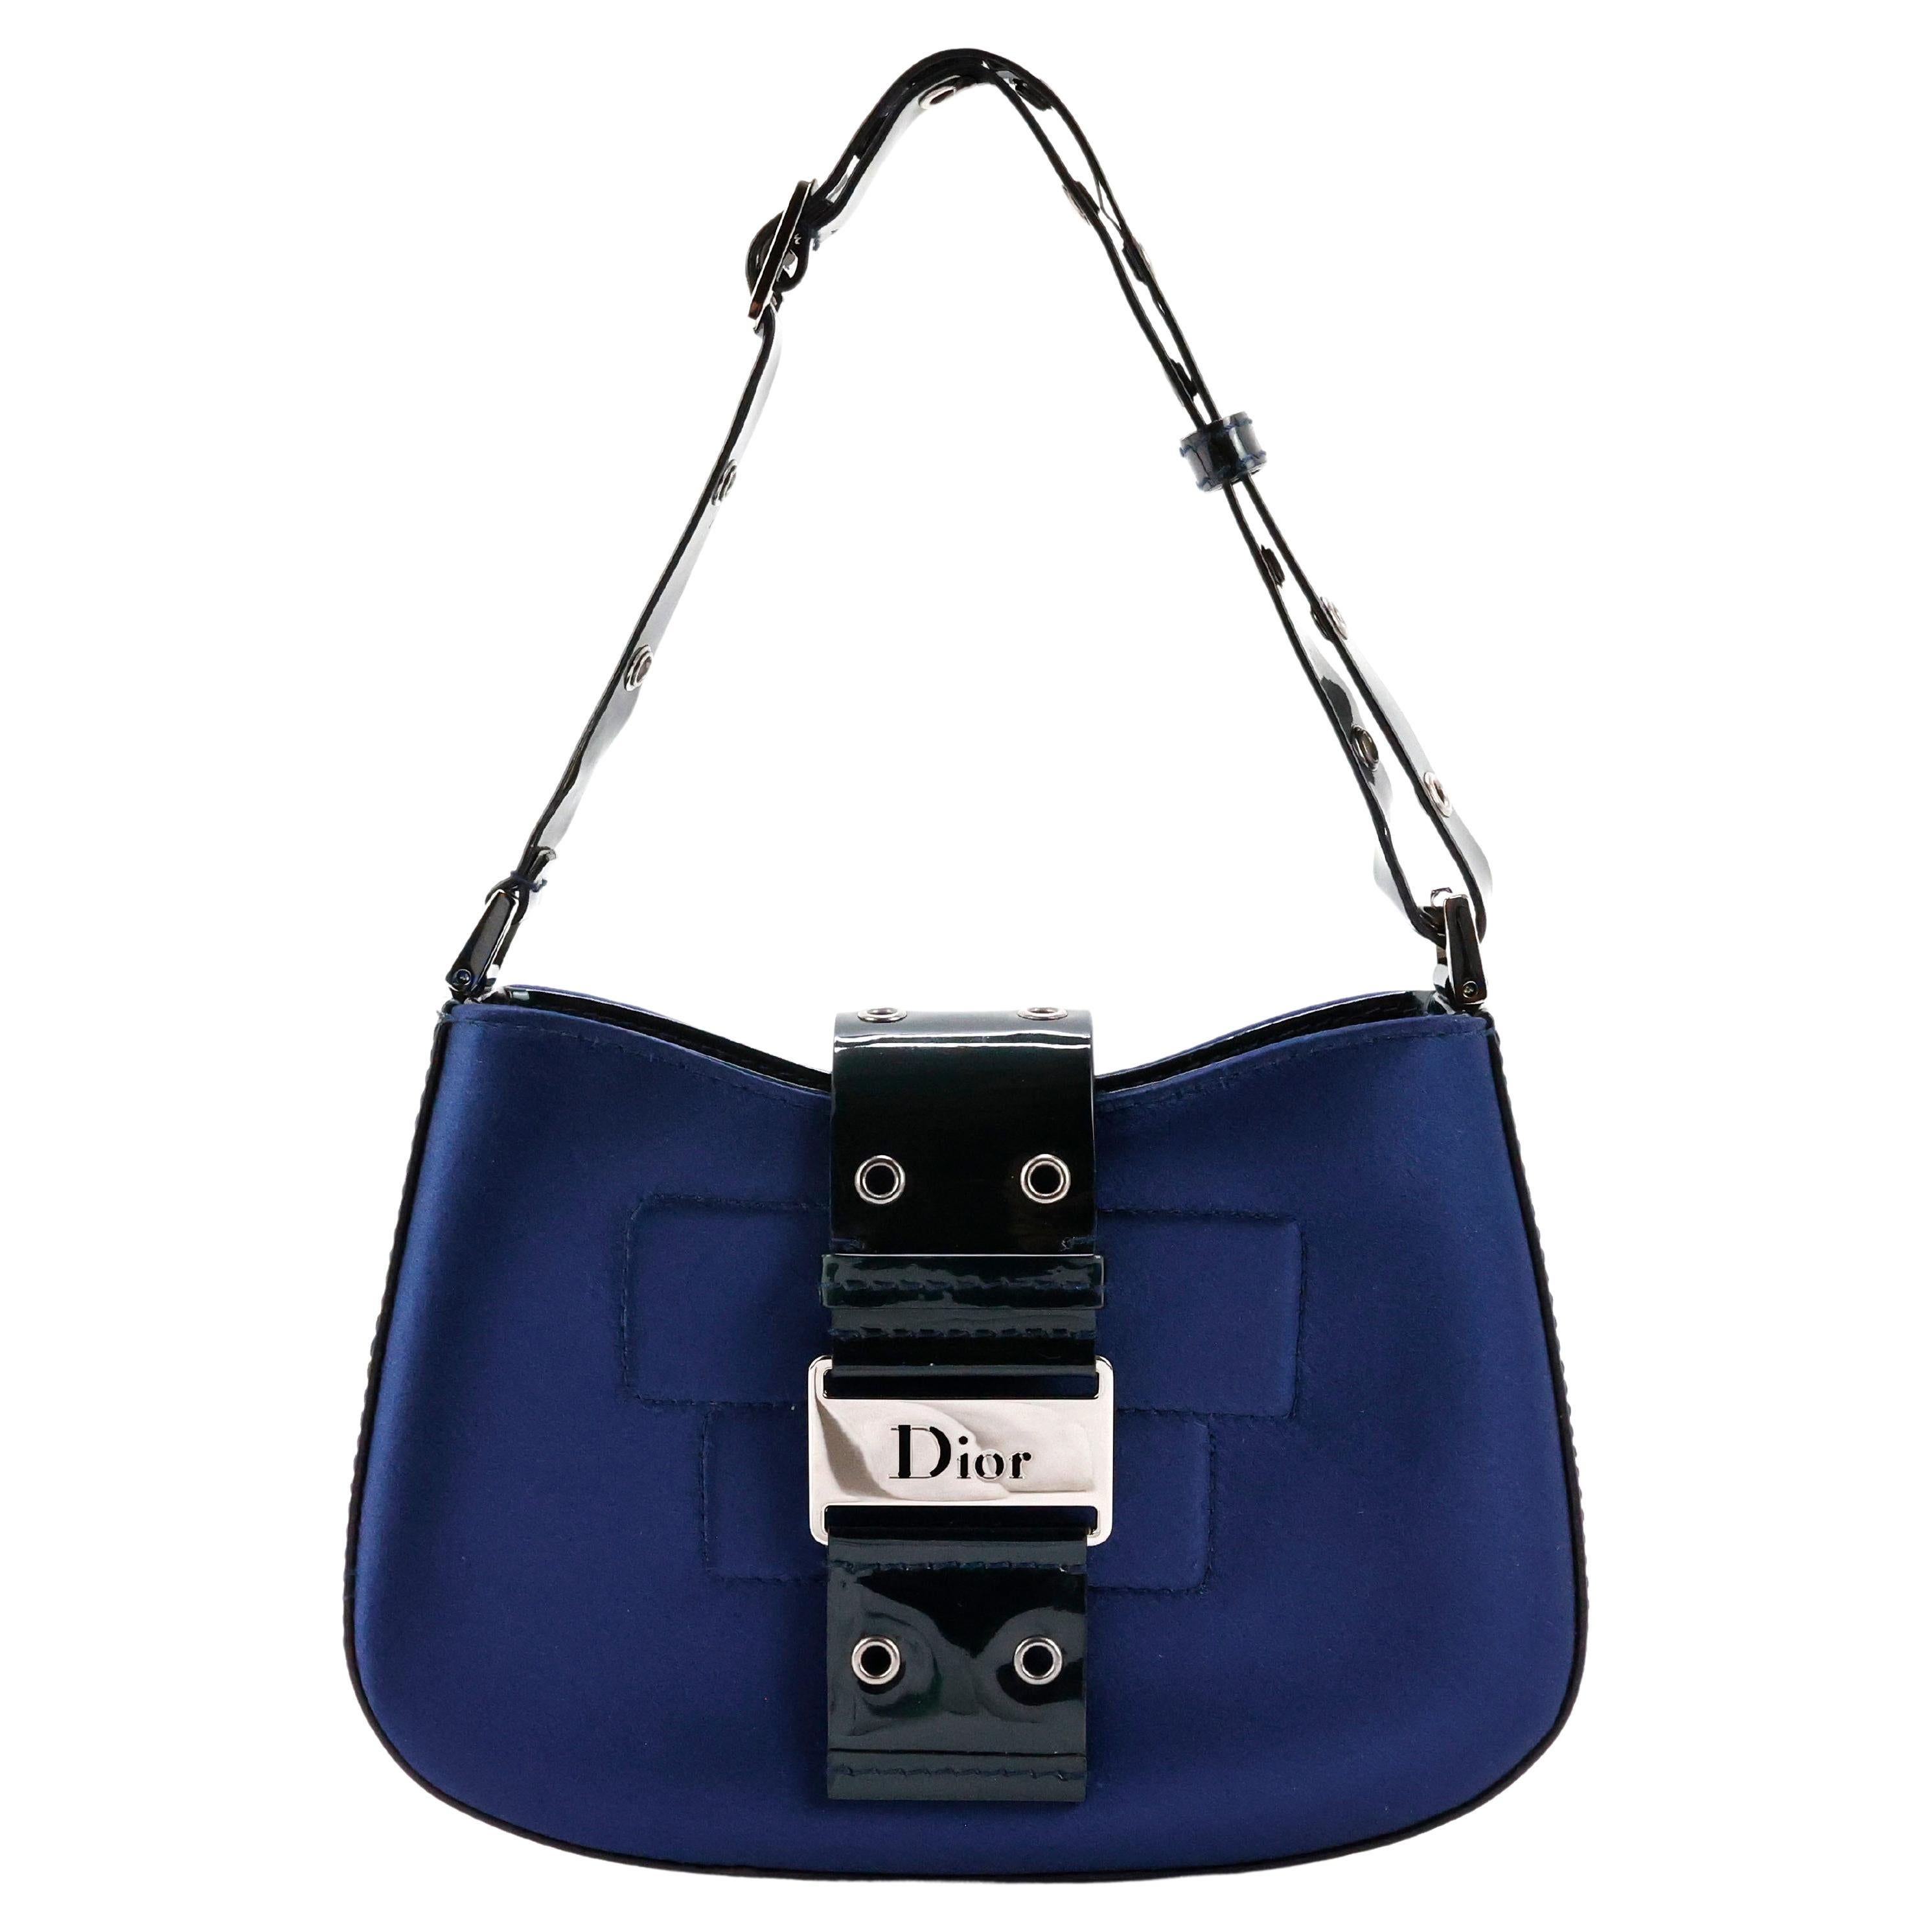 Dior Columbus Bag - 3 For Sale on 1stDibs